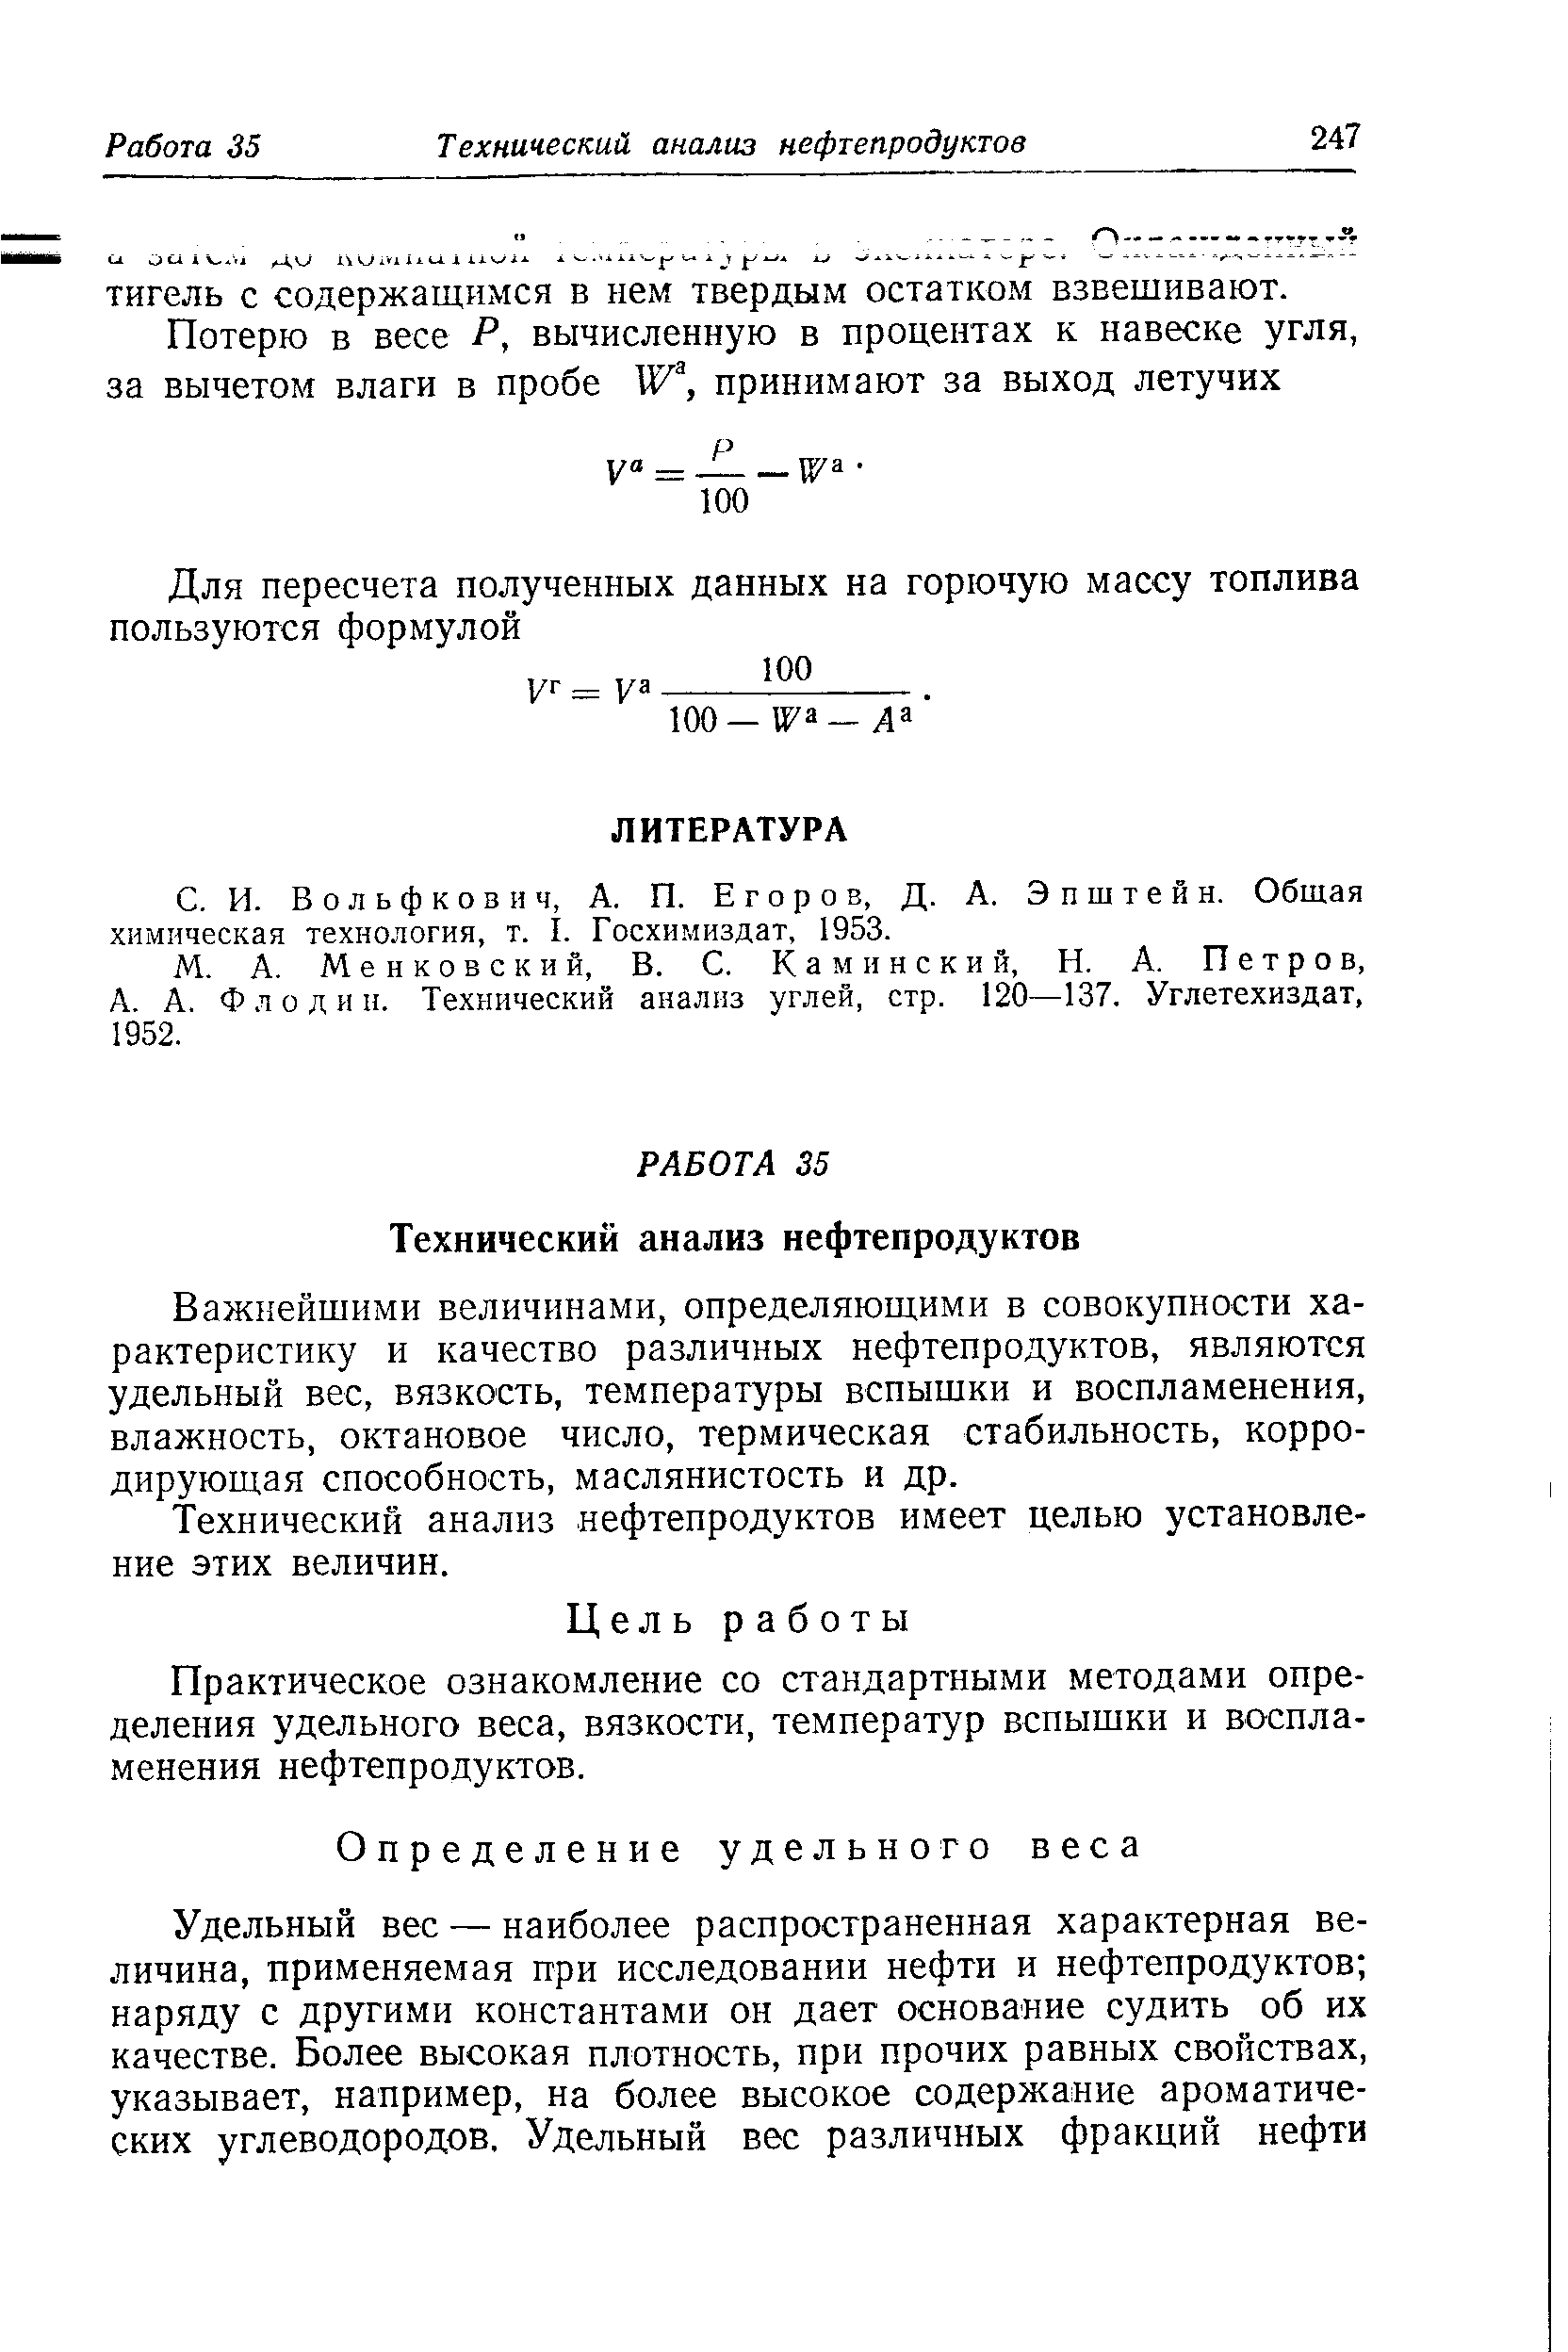 Вольфкович, А. П. Егоров, Д. А. Эпштейн. Общая химическая технология, т. I. Госхимиздат, 1953.